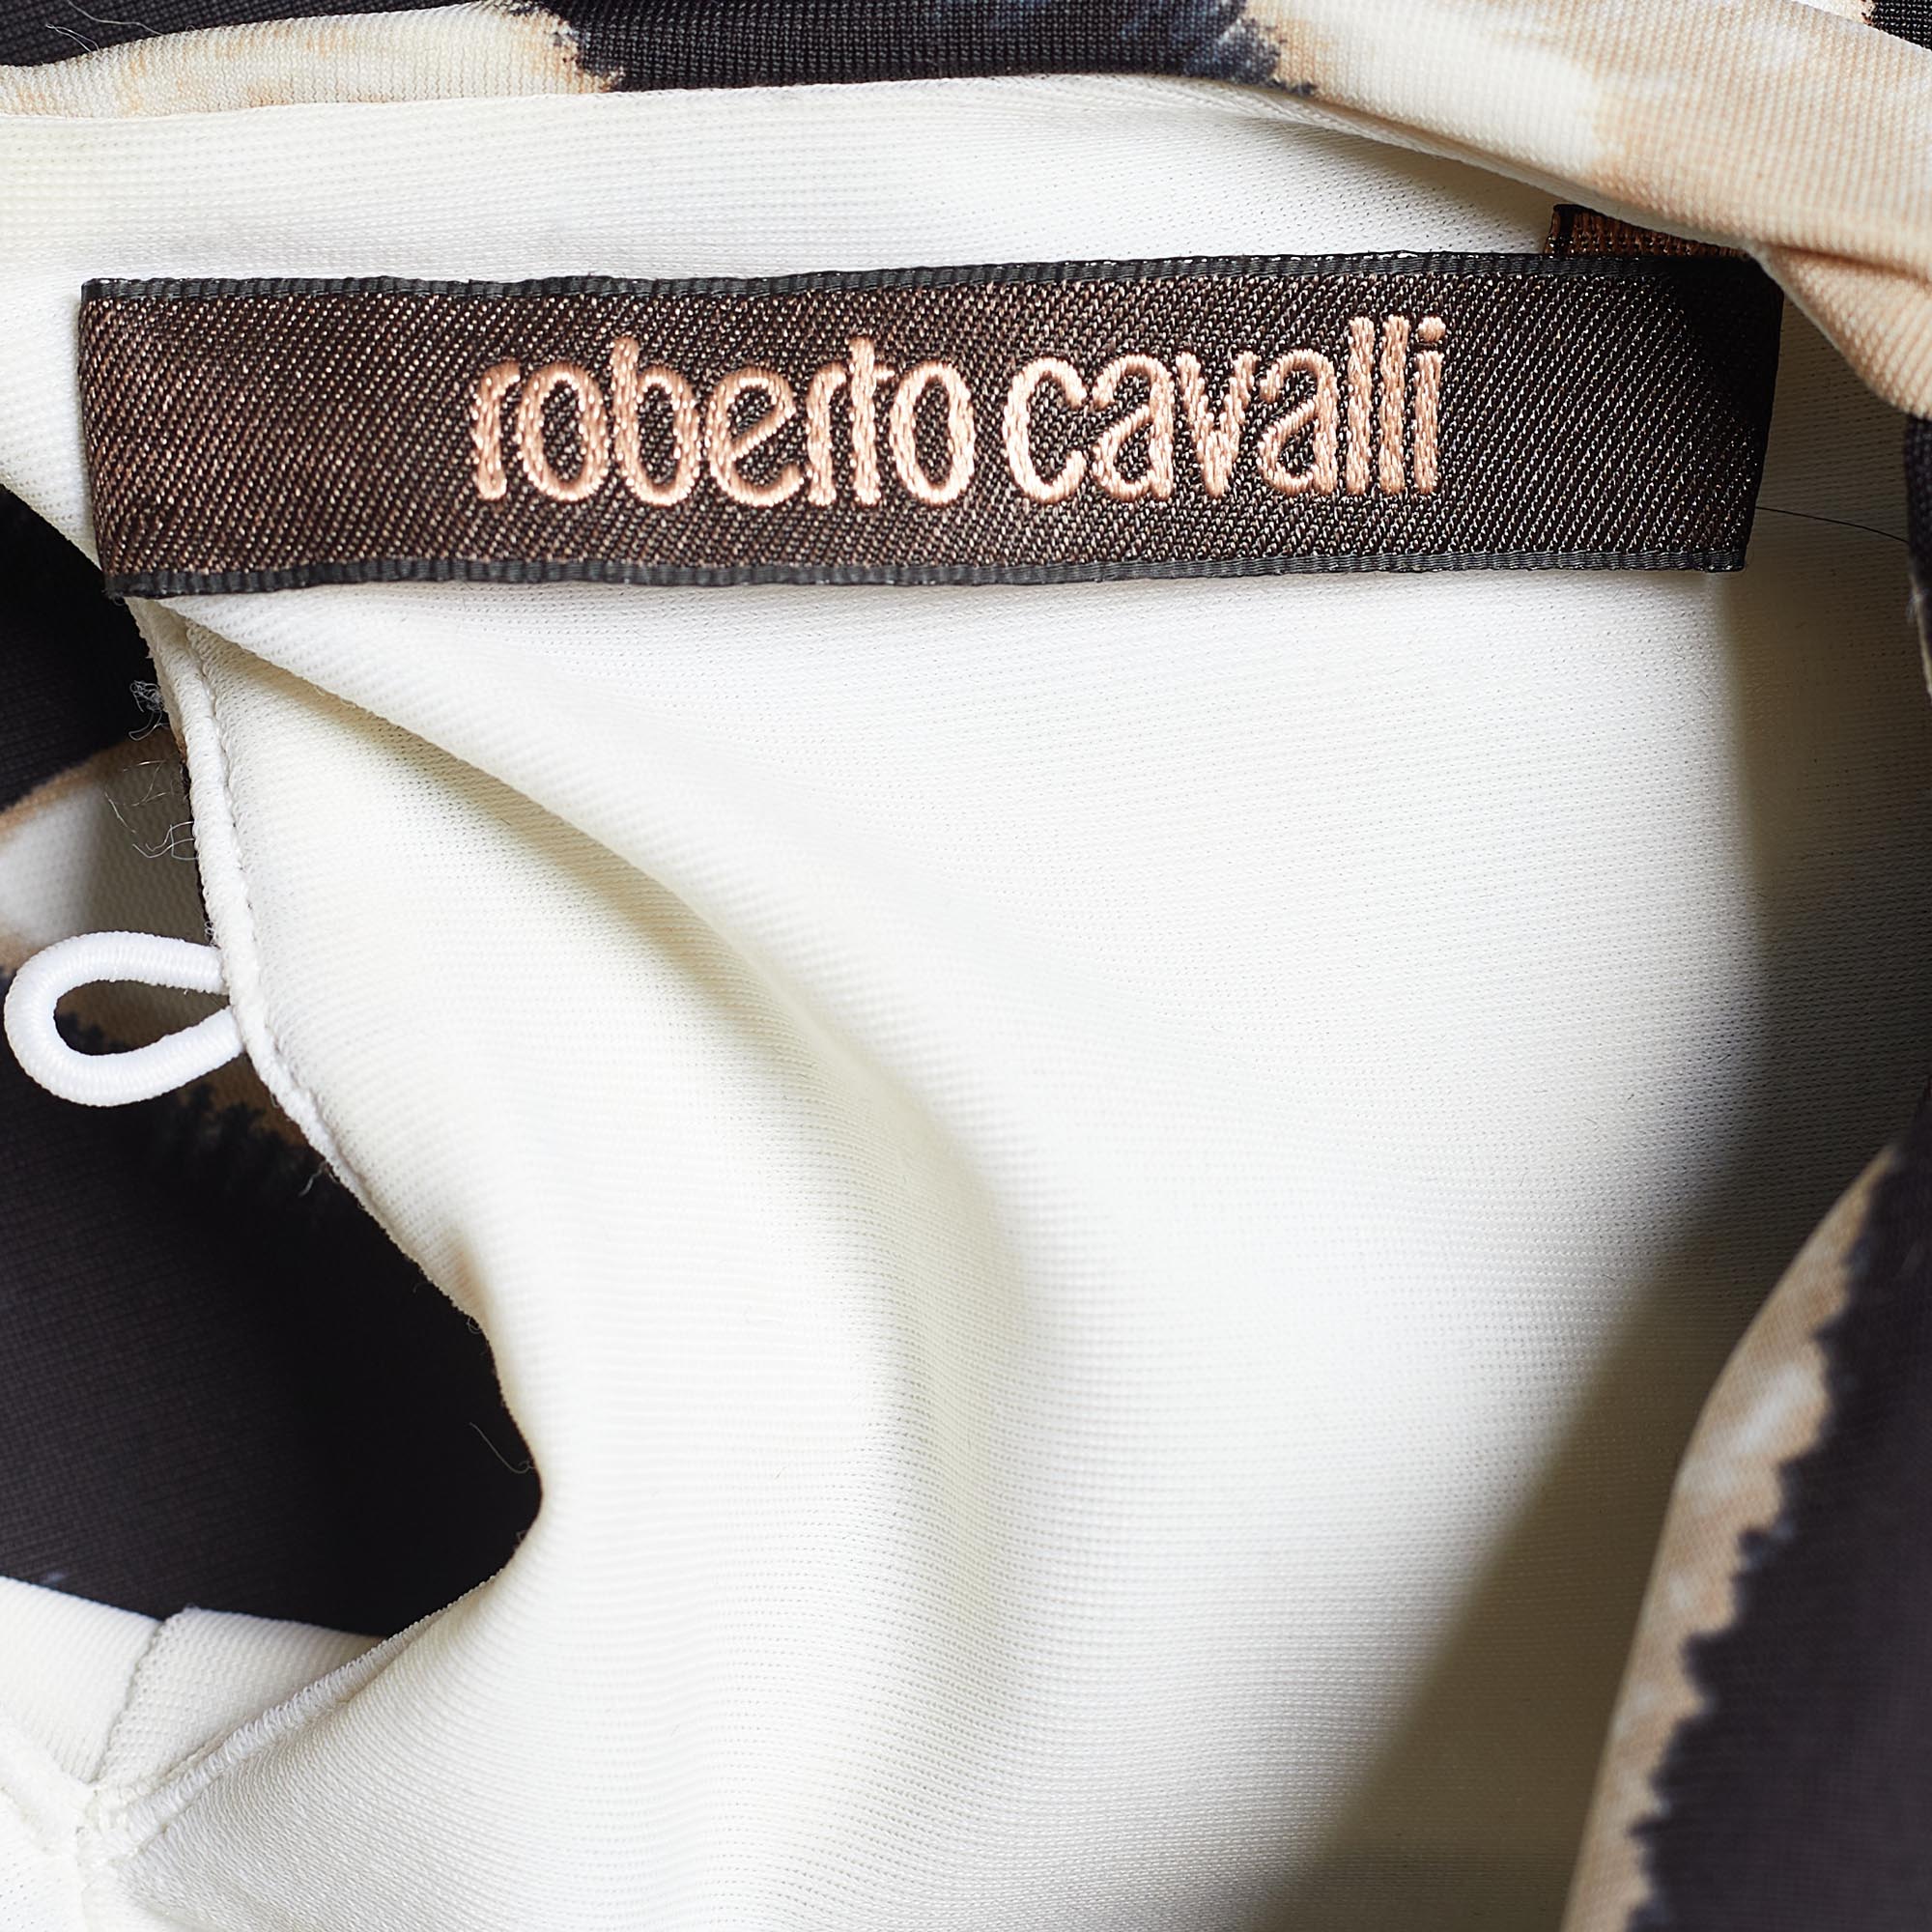 Roberto Cavalli Beige & Brown Striped Knit Top L